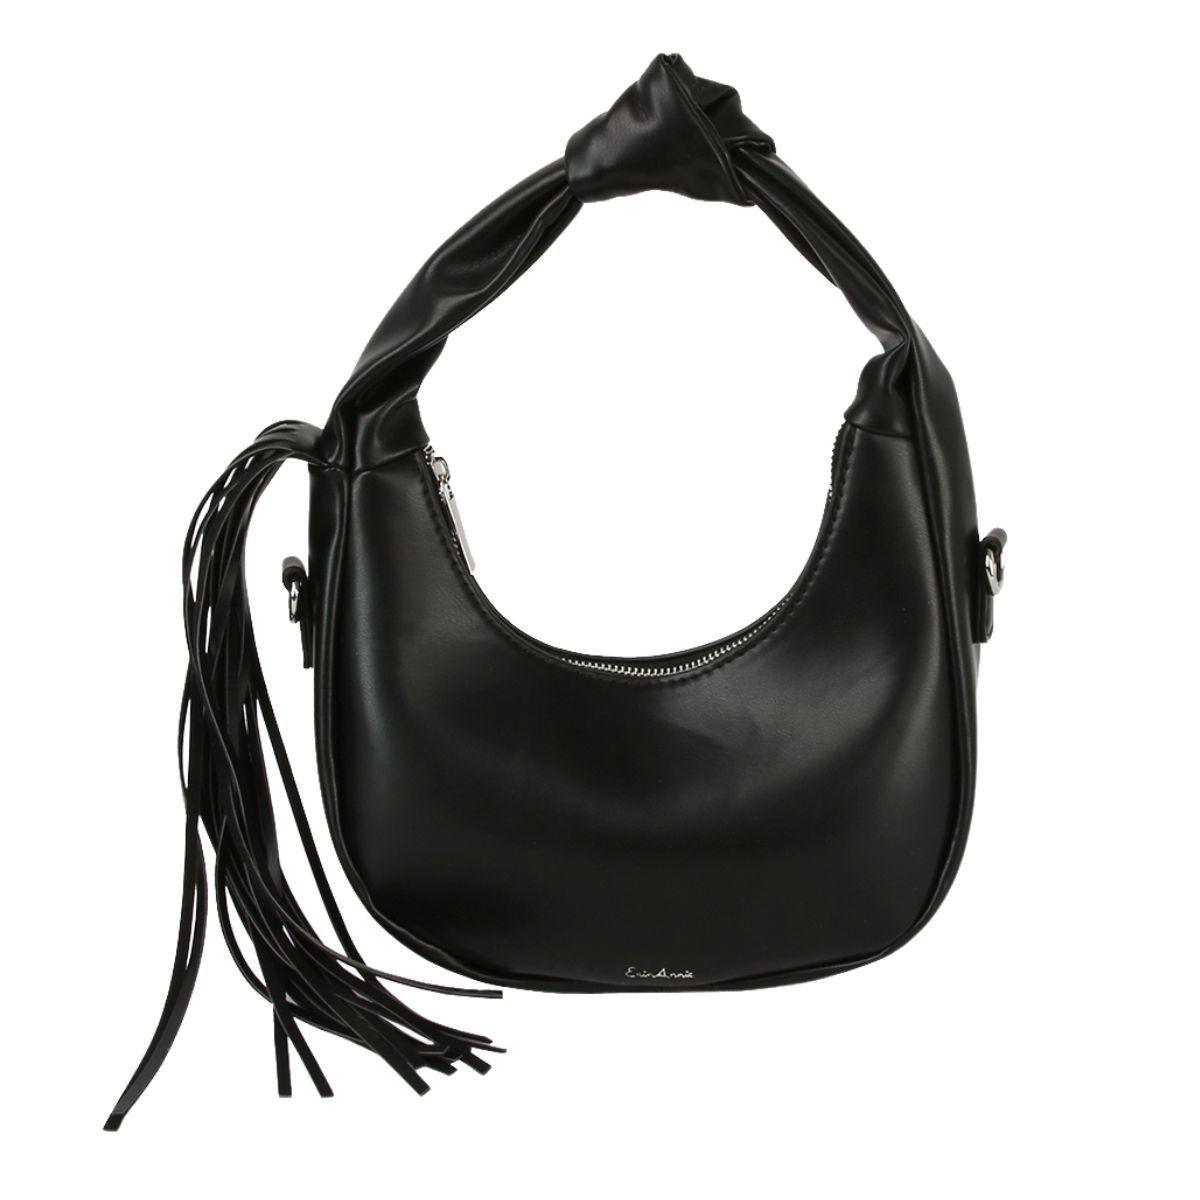 Get Noticed with a Stylish Black Fringe Shoulder Bag for Women